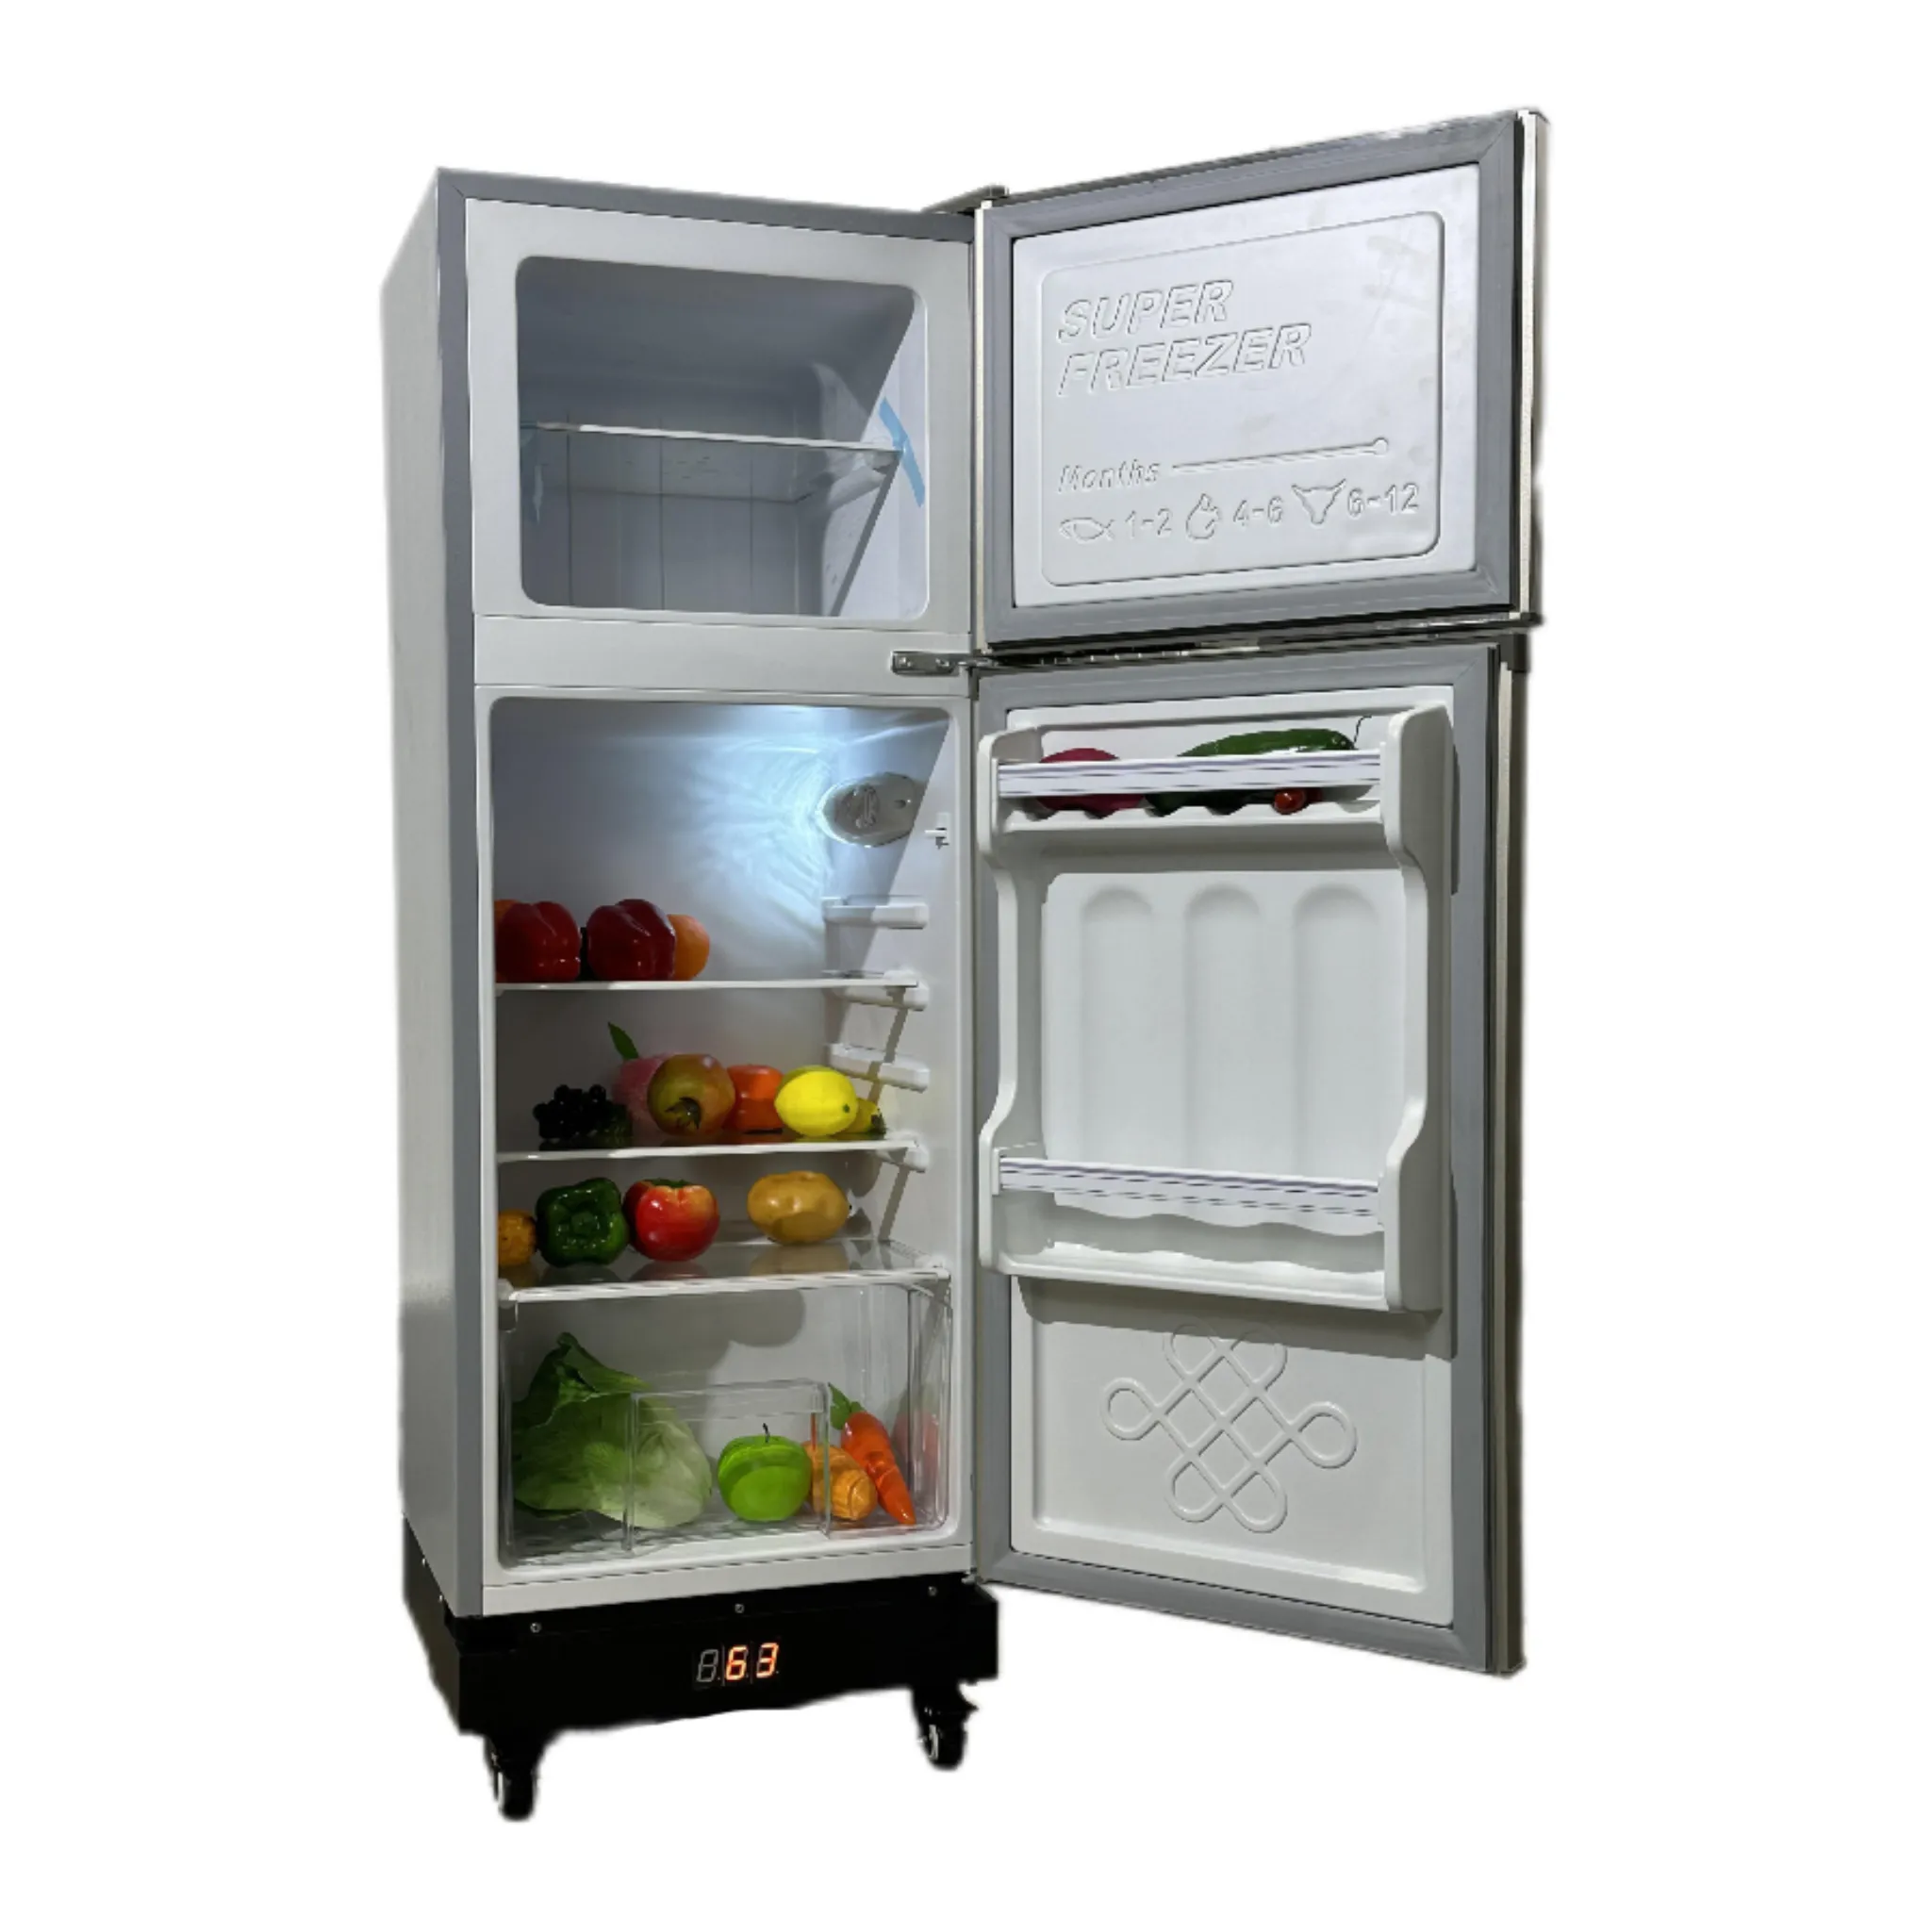 32V solaire Réfrigérateur 128L Congélateur Électrique Refroidisseur Compresseur Réfrigérateur pour Usage Domestique Réfrigérateur 0 ~ 10 degrés Congélateur 18 degrés